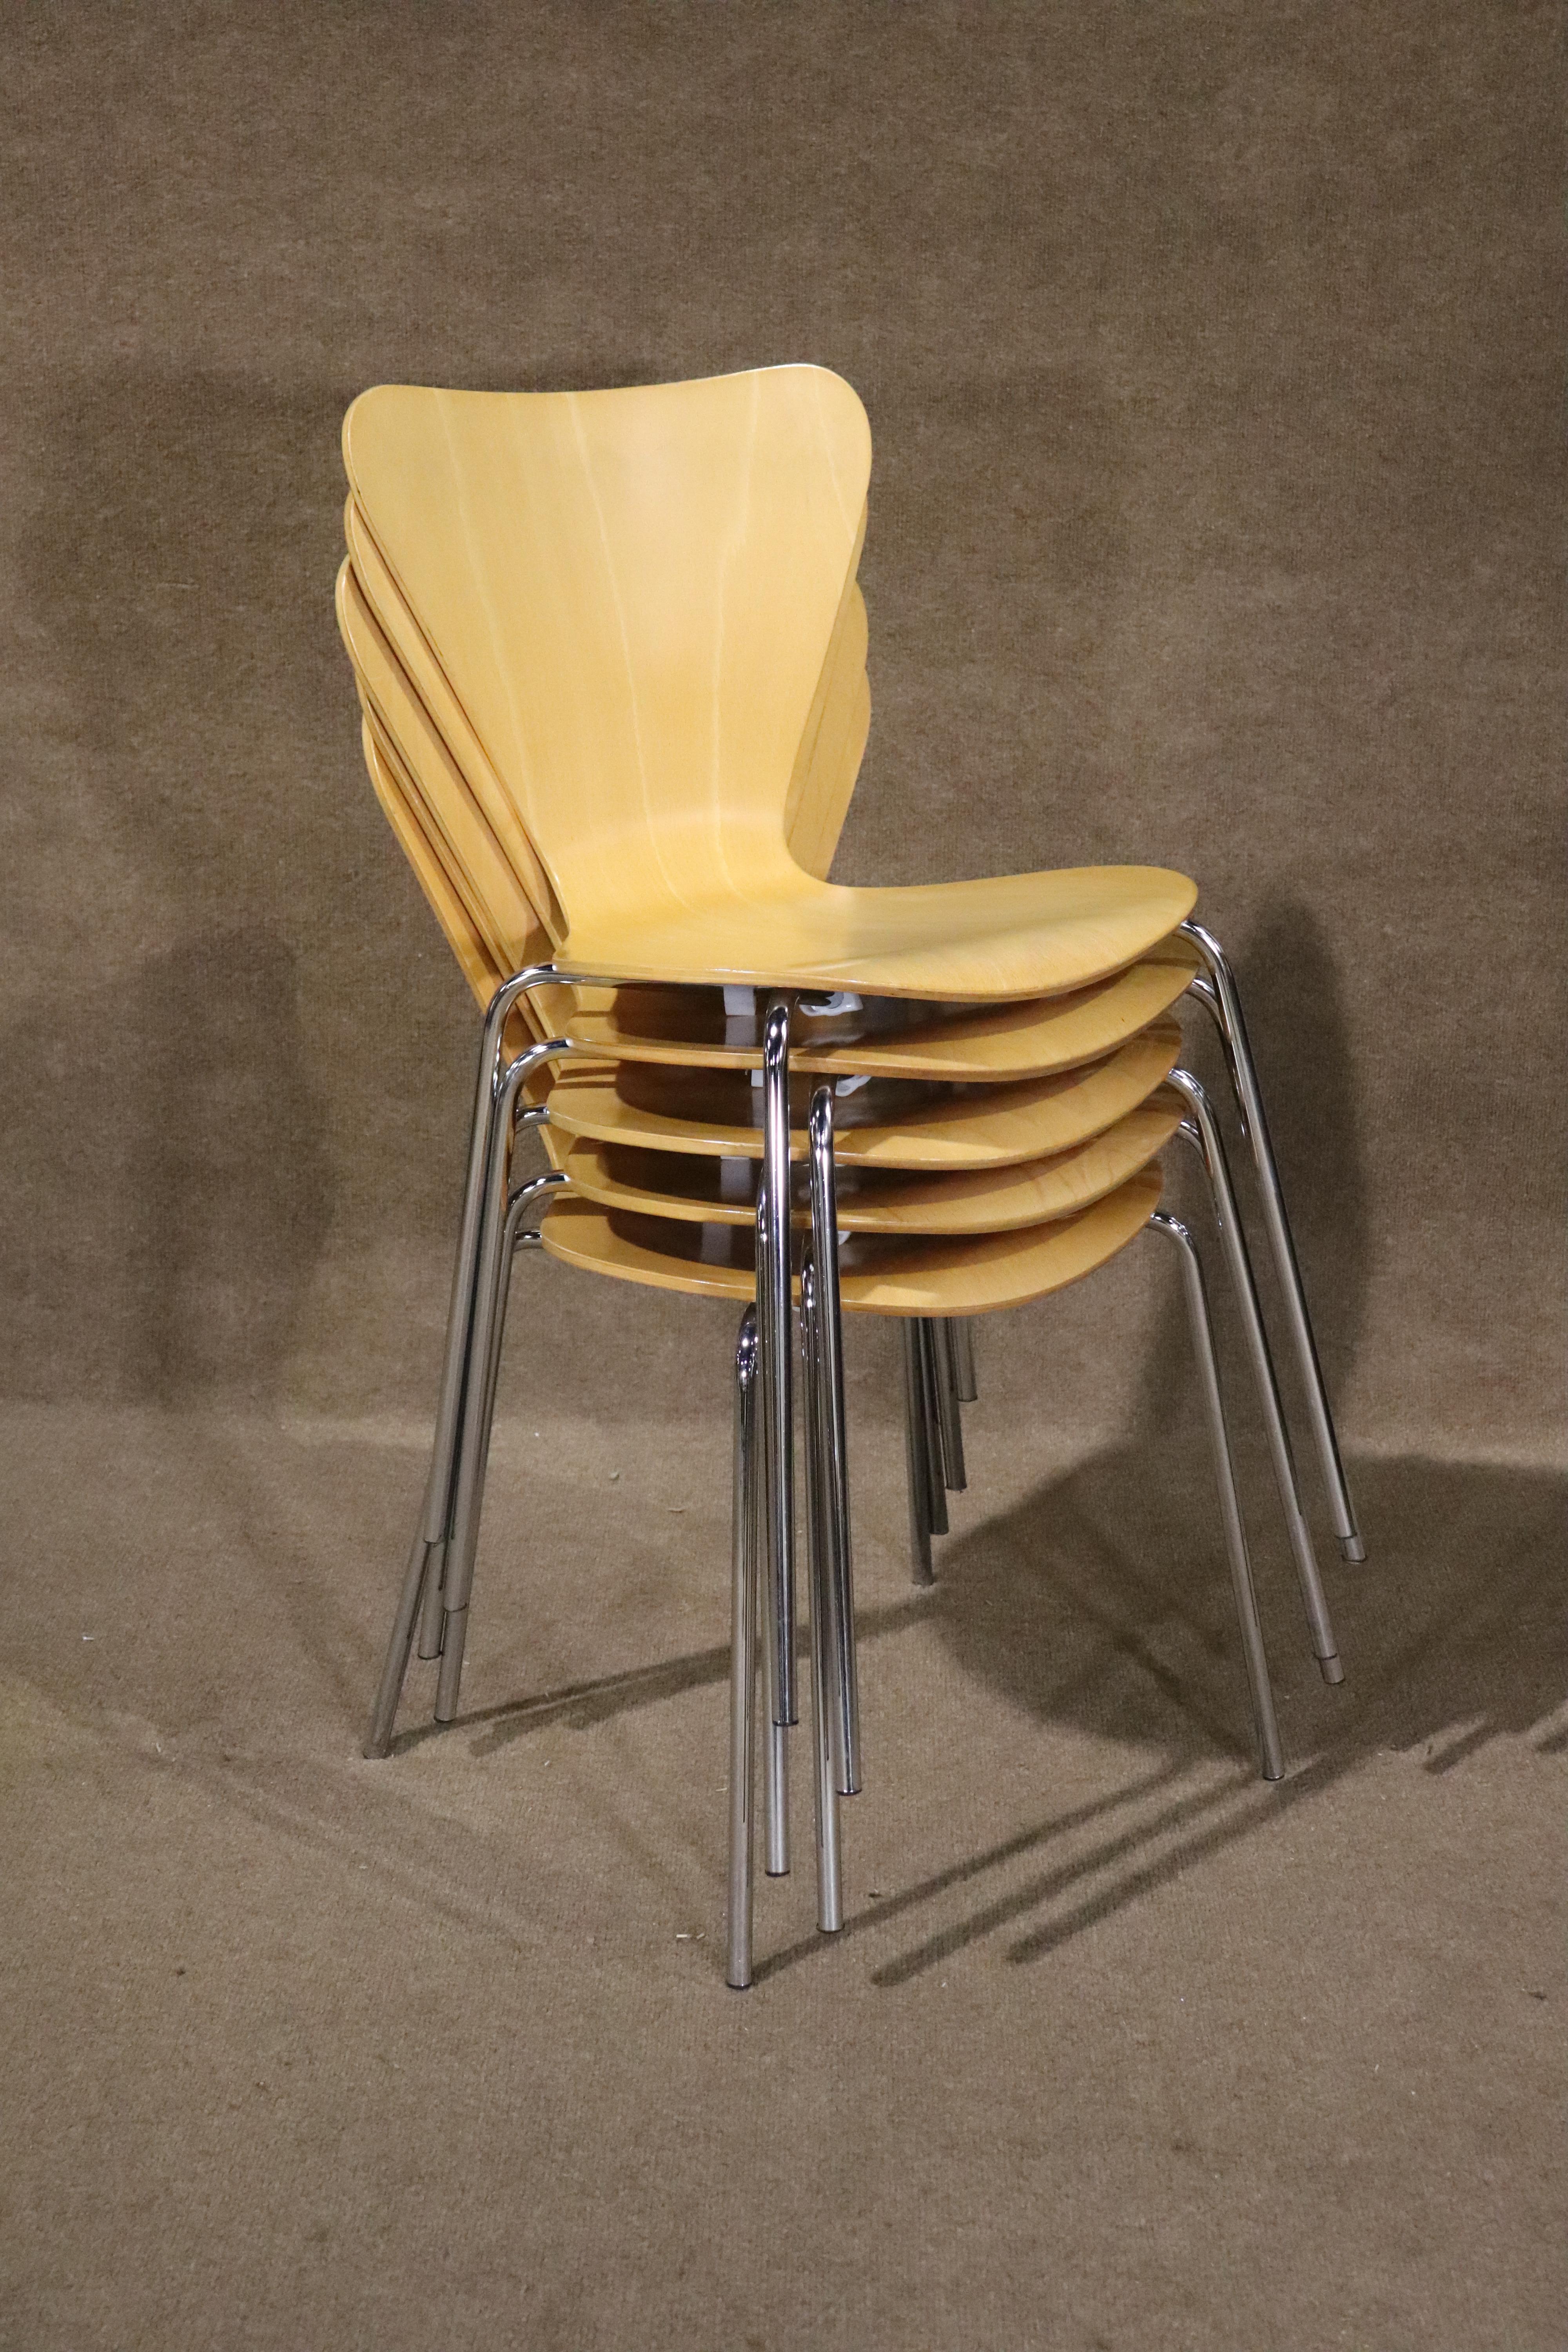 Ces chaises modernes s'inspirent des célèbres chaises empilables de la série 7 d'Arne Jacobsen. Design moderne simple du milieu du siècle avec des sièges en bois courbé d'érable sur des pieds en chrome poli.
Veuillez confirmer le lieu NY ou NJ